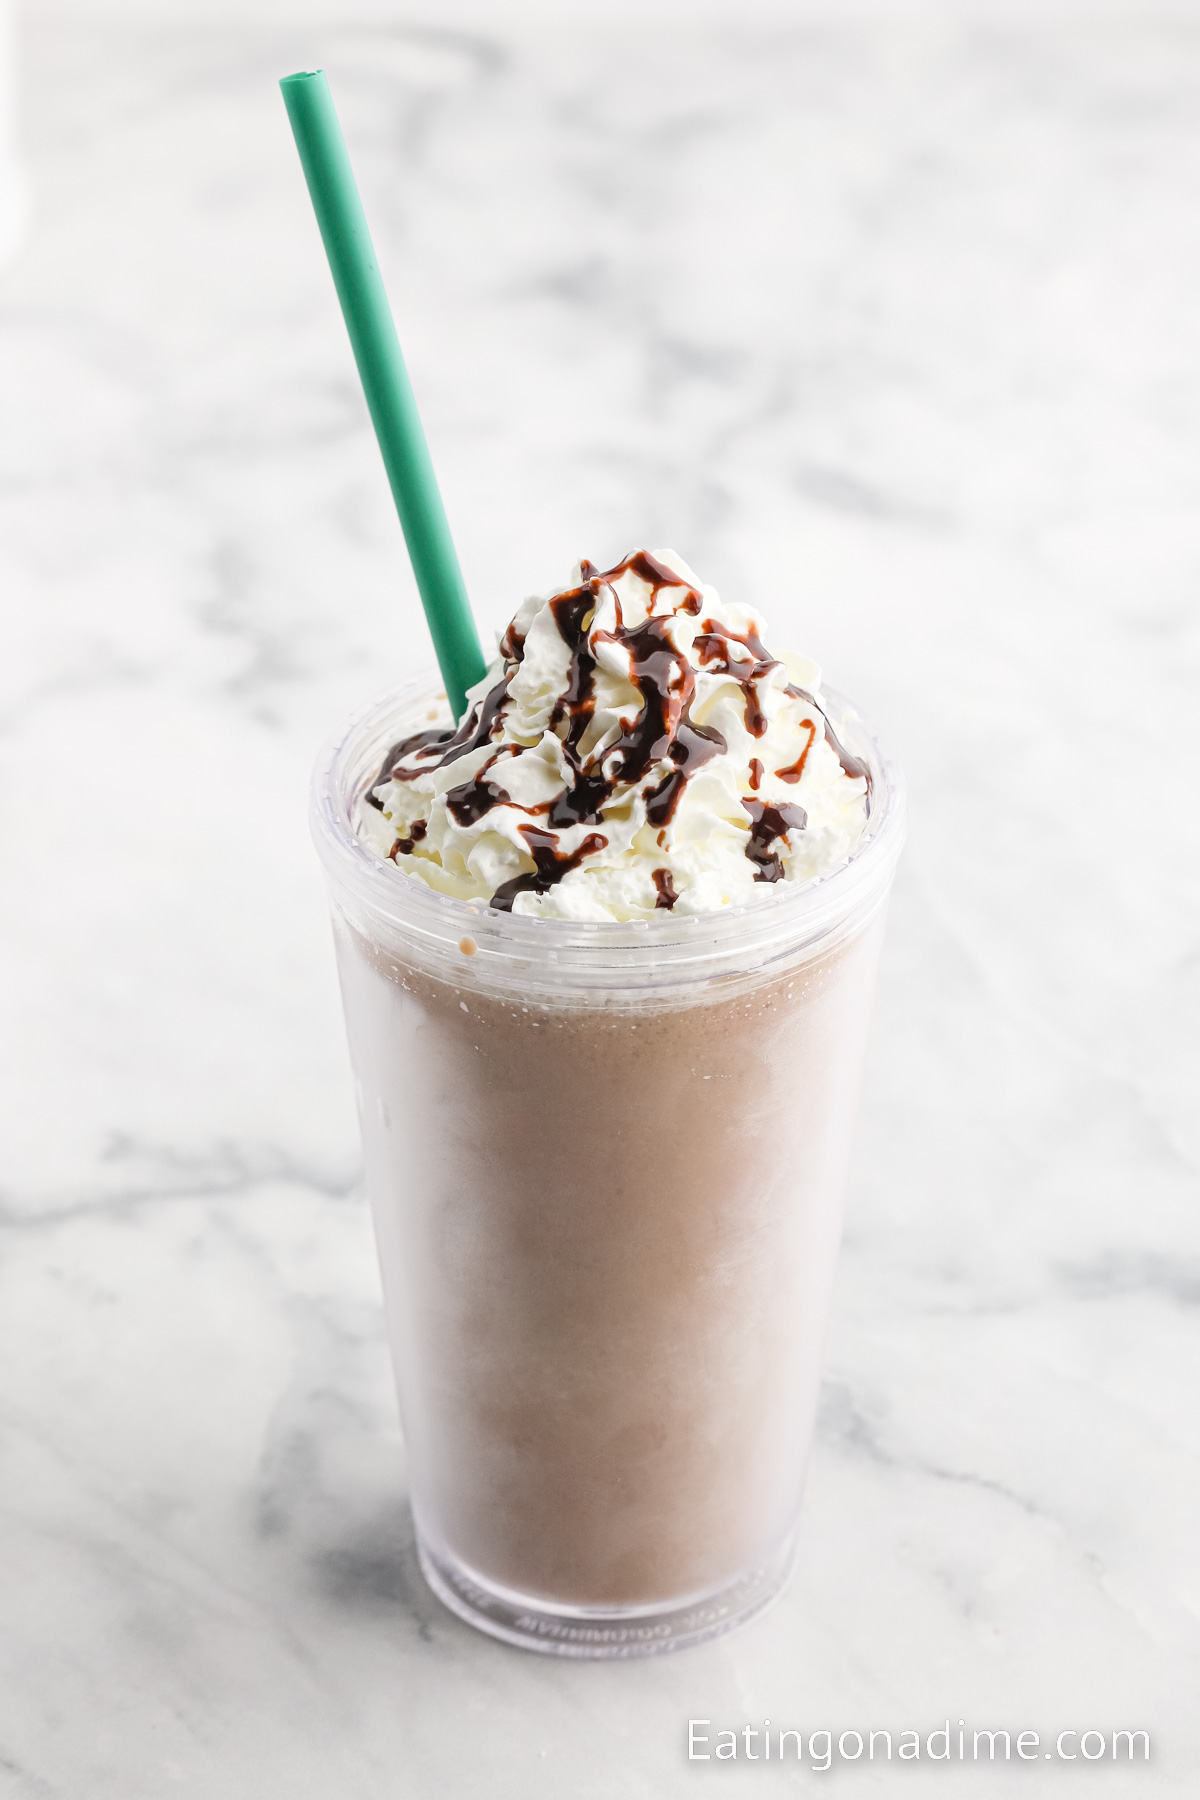 https://www.eatingonadime.com/wp-content/uploads/2023/05/Starbucks-Mocha-Frappuccino-200-300KB-10.jpg